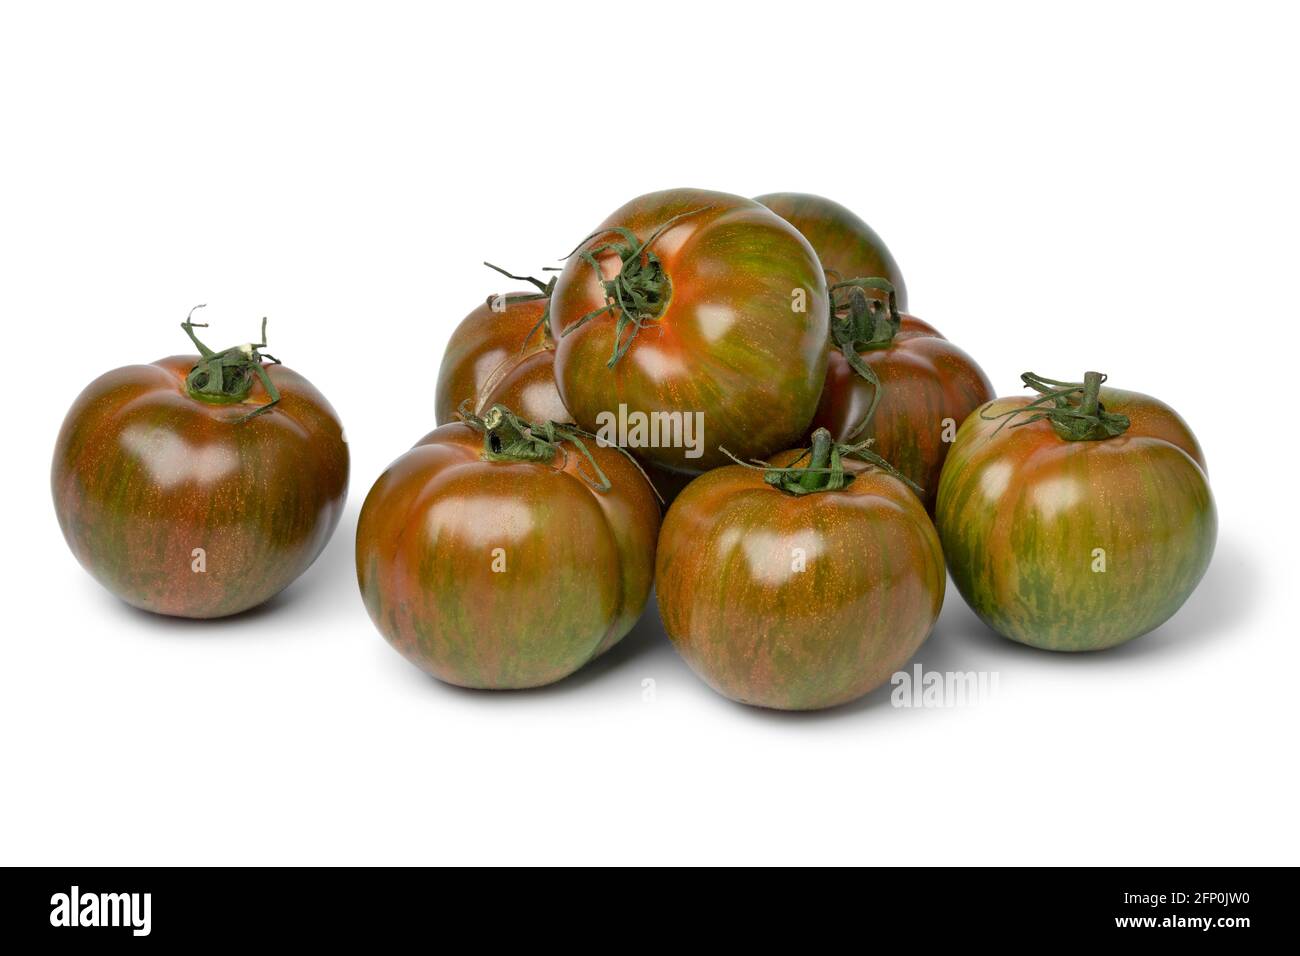 Groupe de tomates entières fraîches mûres à rayures rouges et vertes gros plan isolé sur fond blanc Banque D'Images